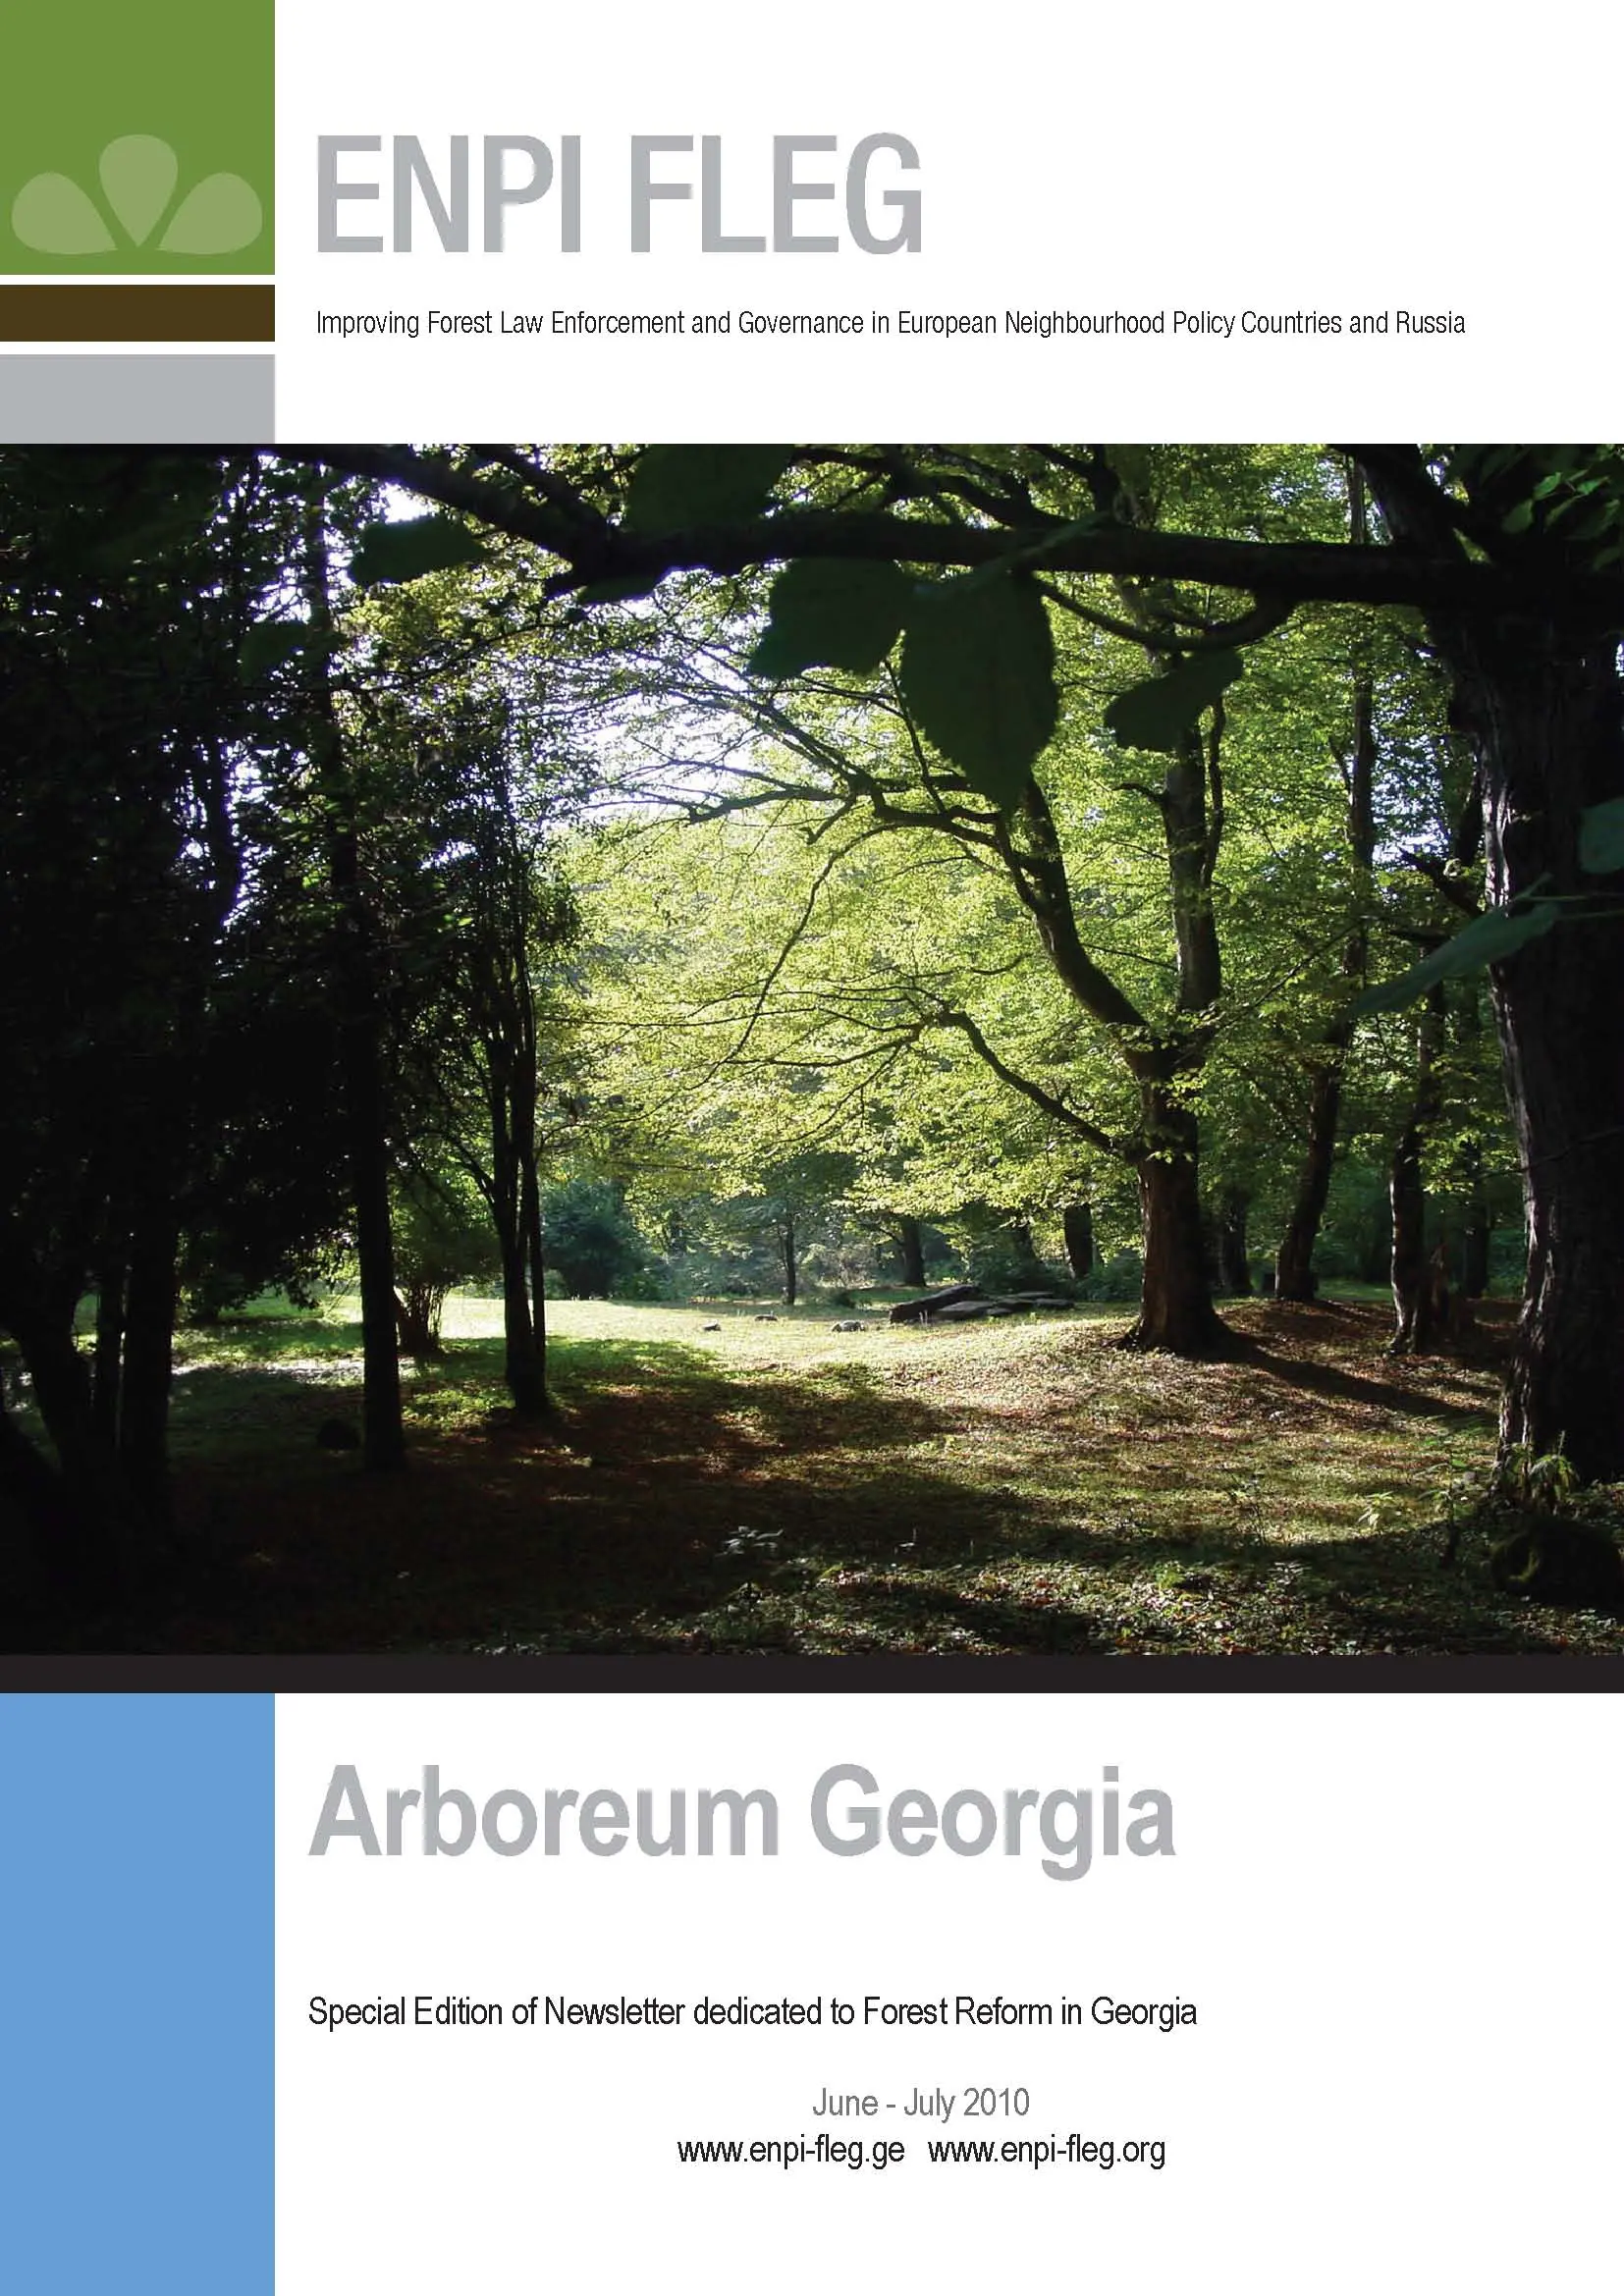 ARBOREUM Georgia - Special edition